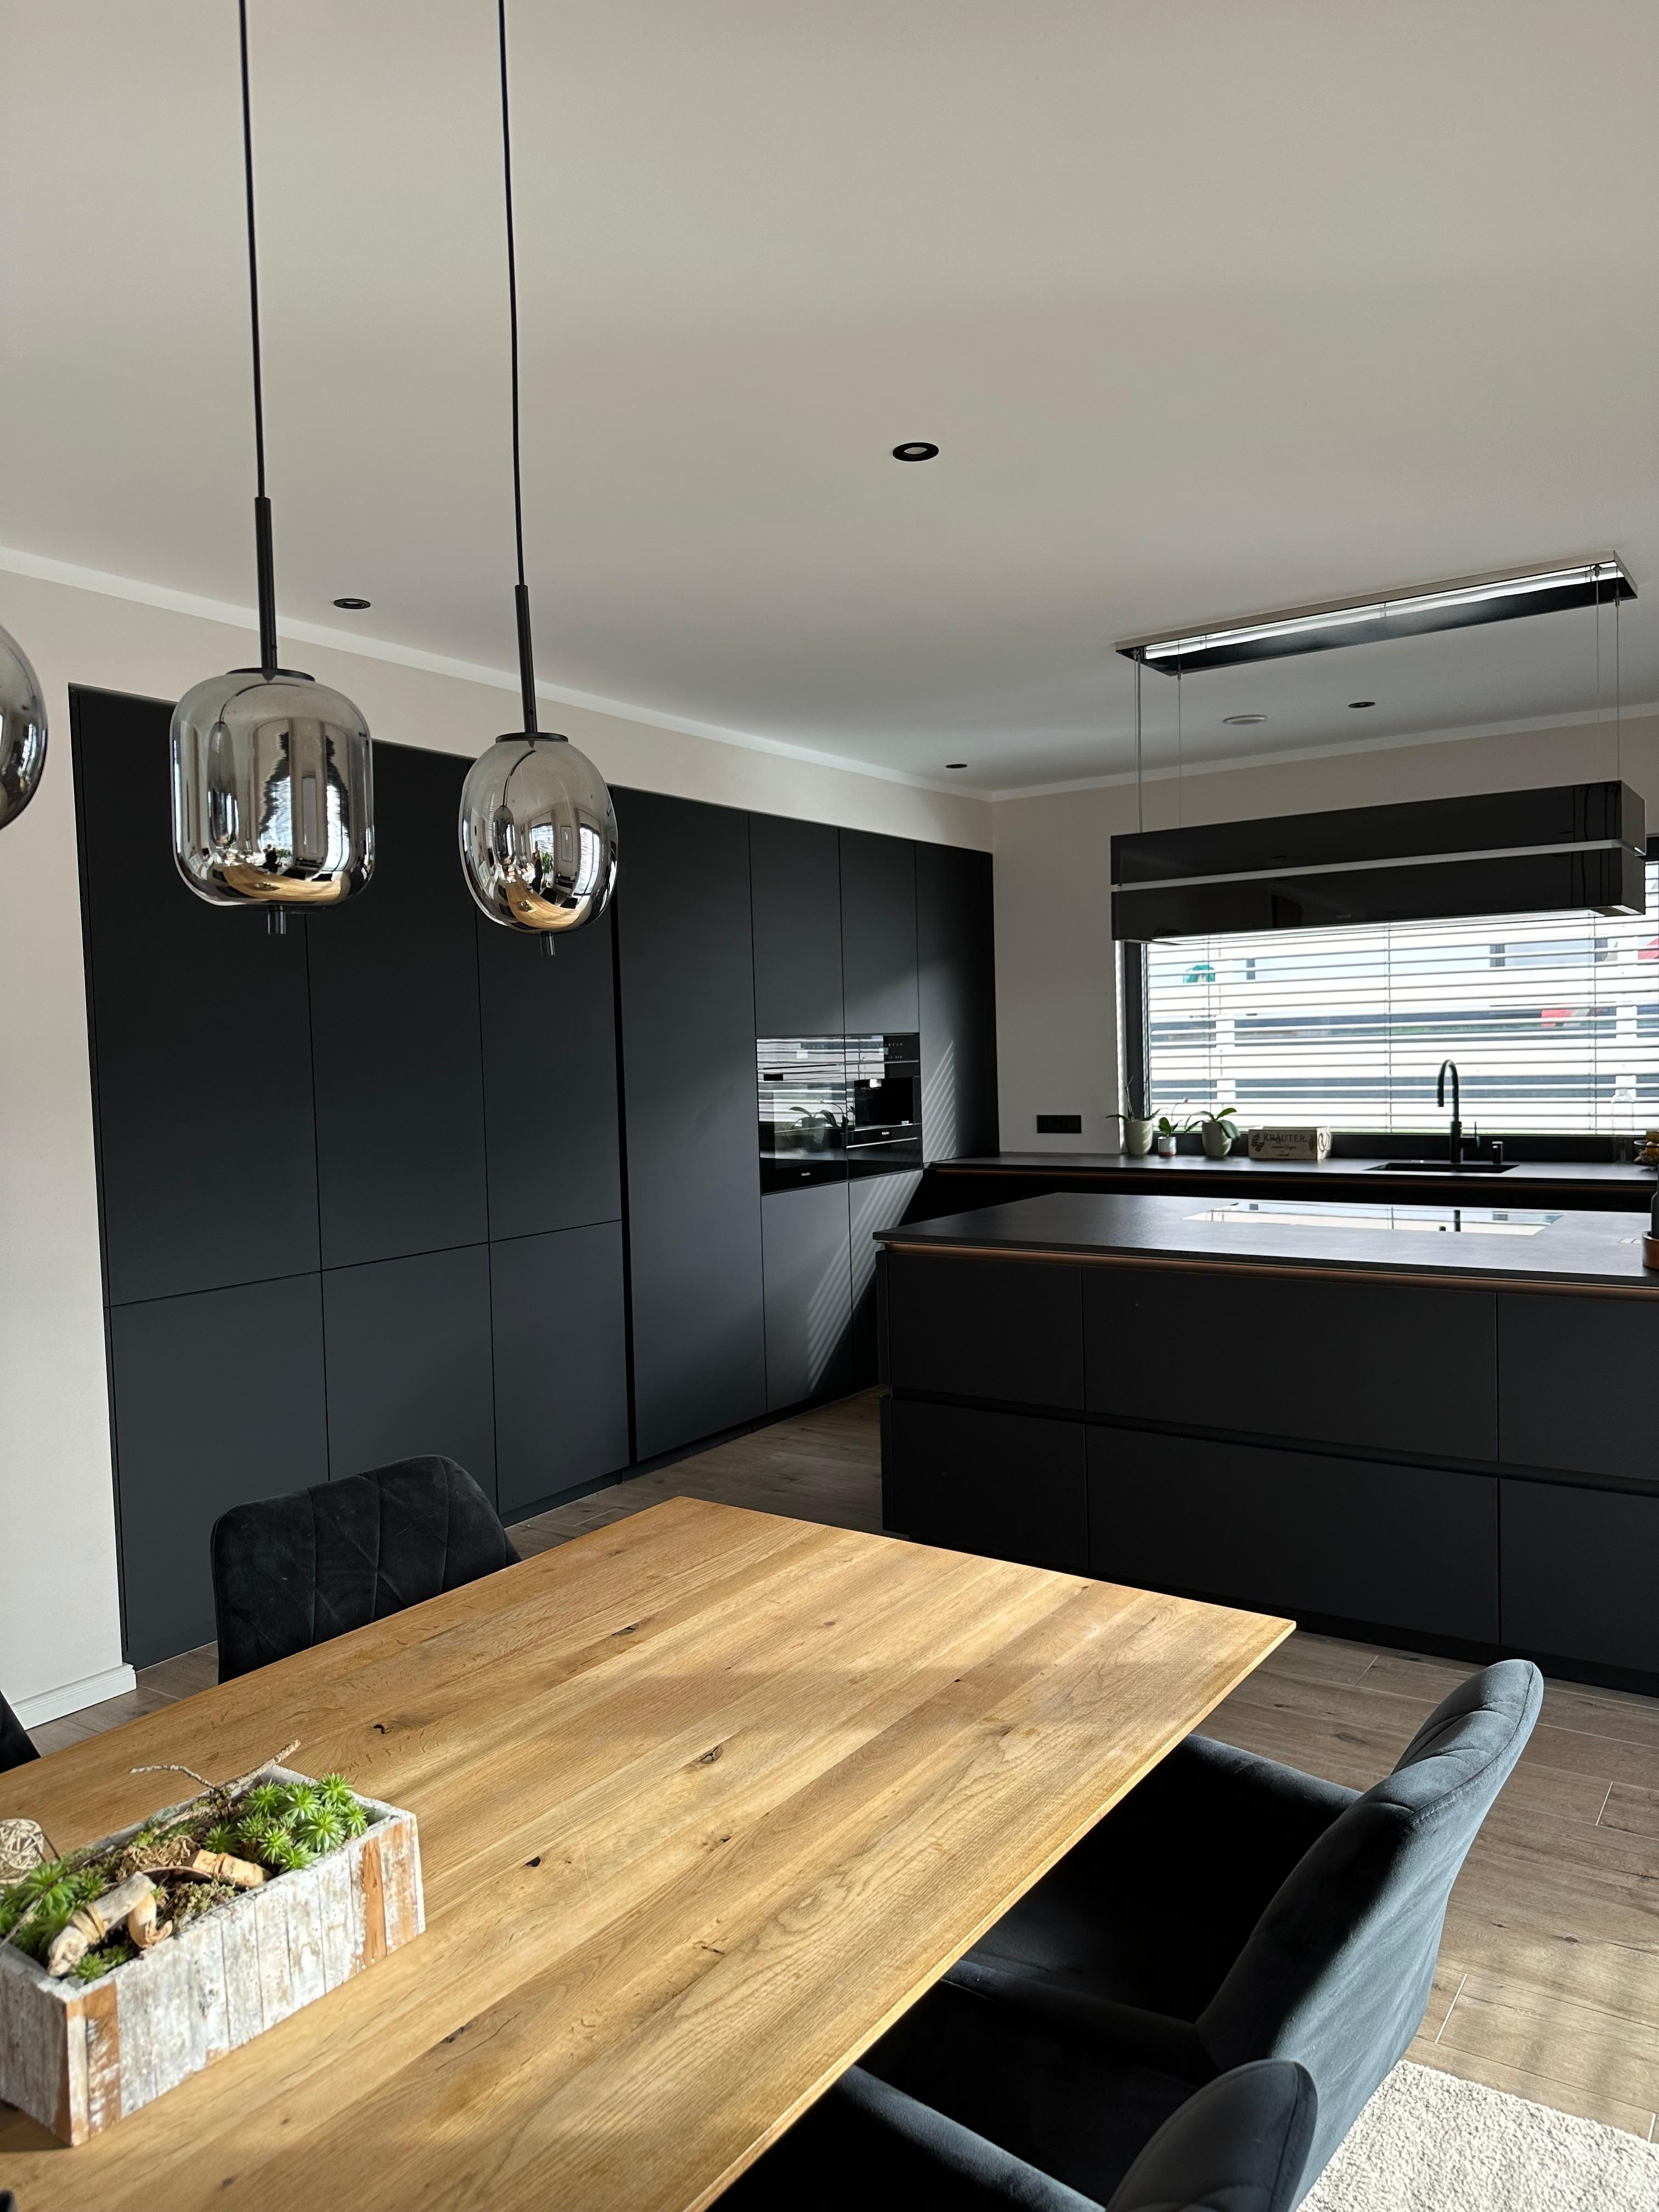 #küche #kochen #schwarzeküche #Esstisch #wohnbereich #esszimmer #einrichtung #minimalismus